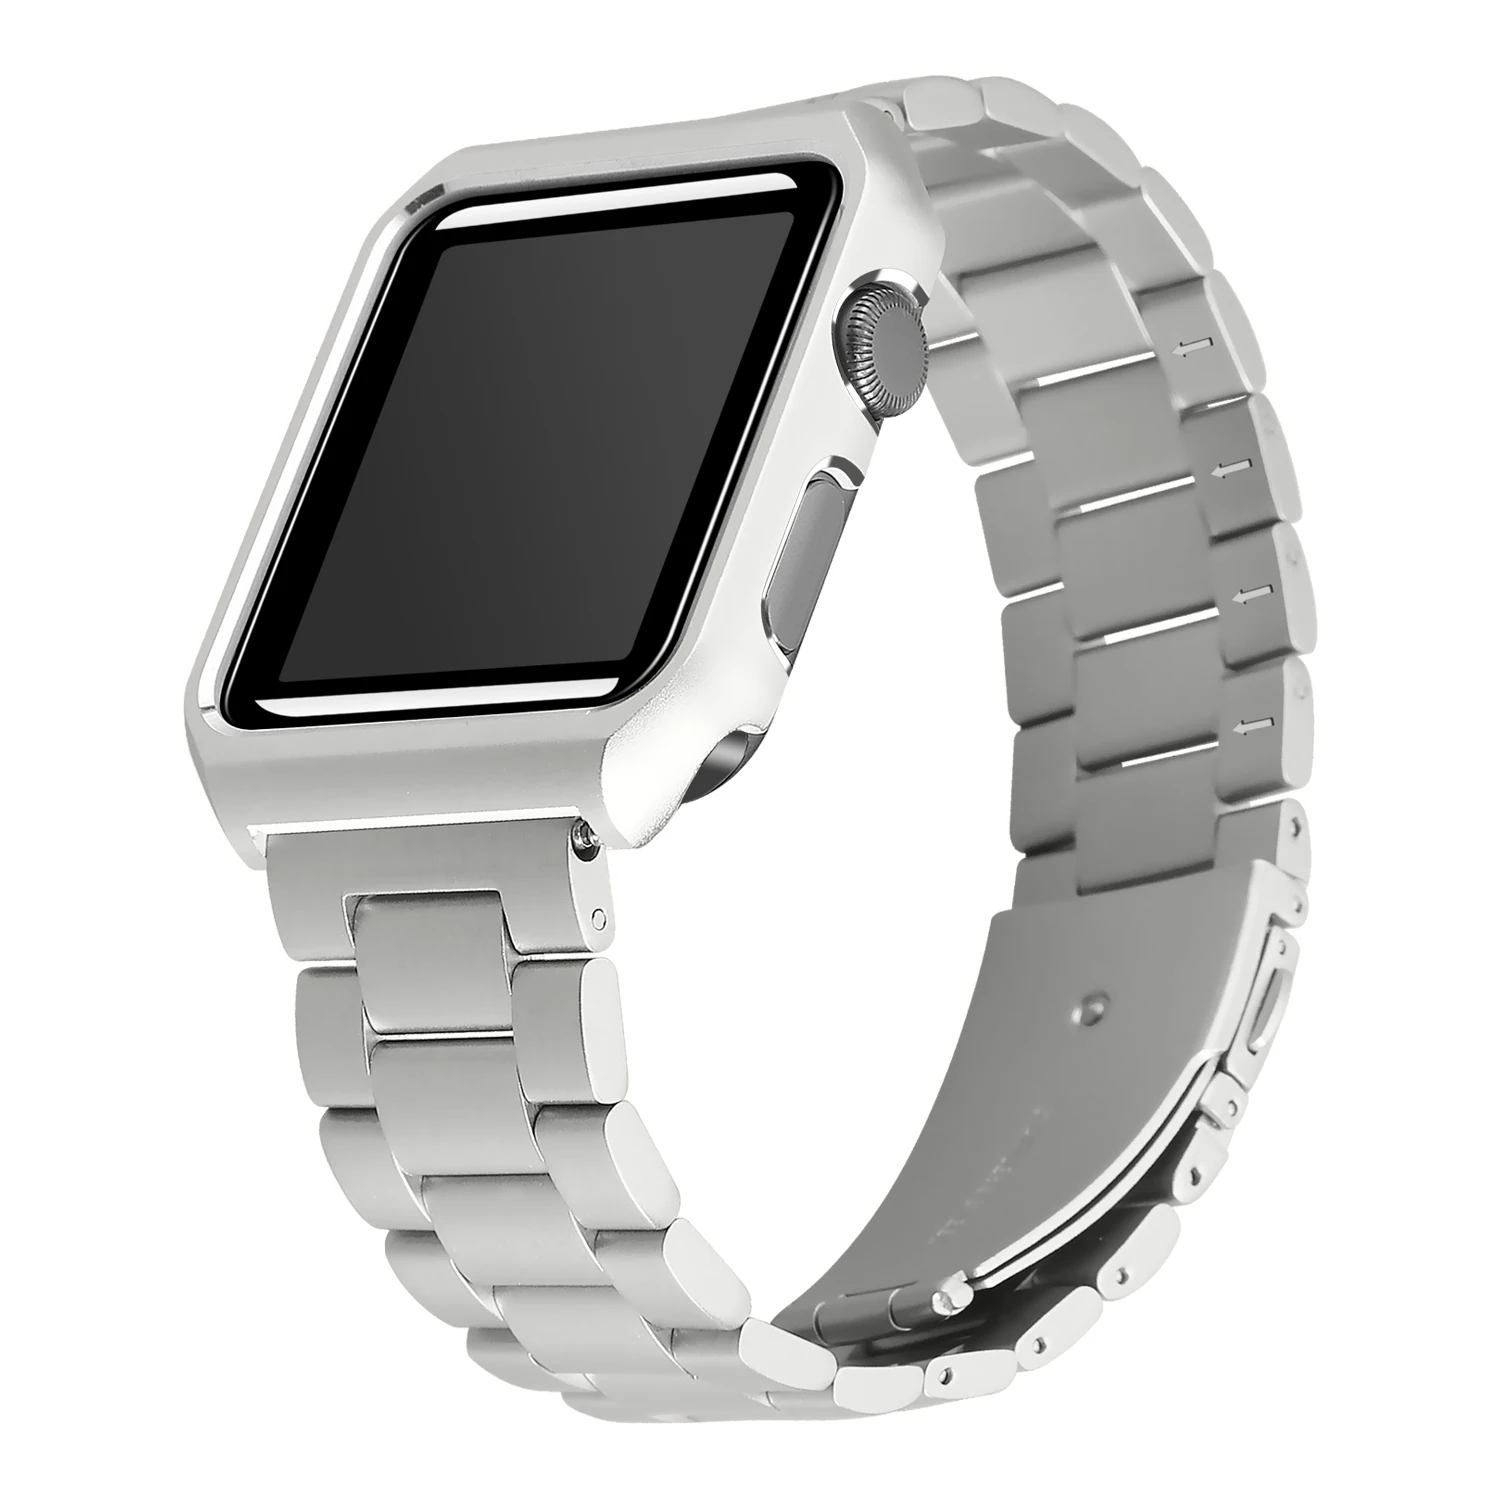 JANSIN металлический чехол+ ремешок из нержавеющей стали для Apple Watch 38 мм 42 мм 40 мм 44 мм ремешок для iwatch серии 4 3 2 1 чехол с браслетом